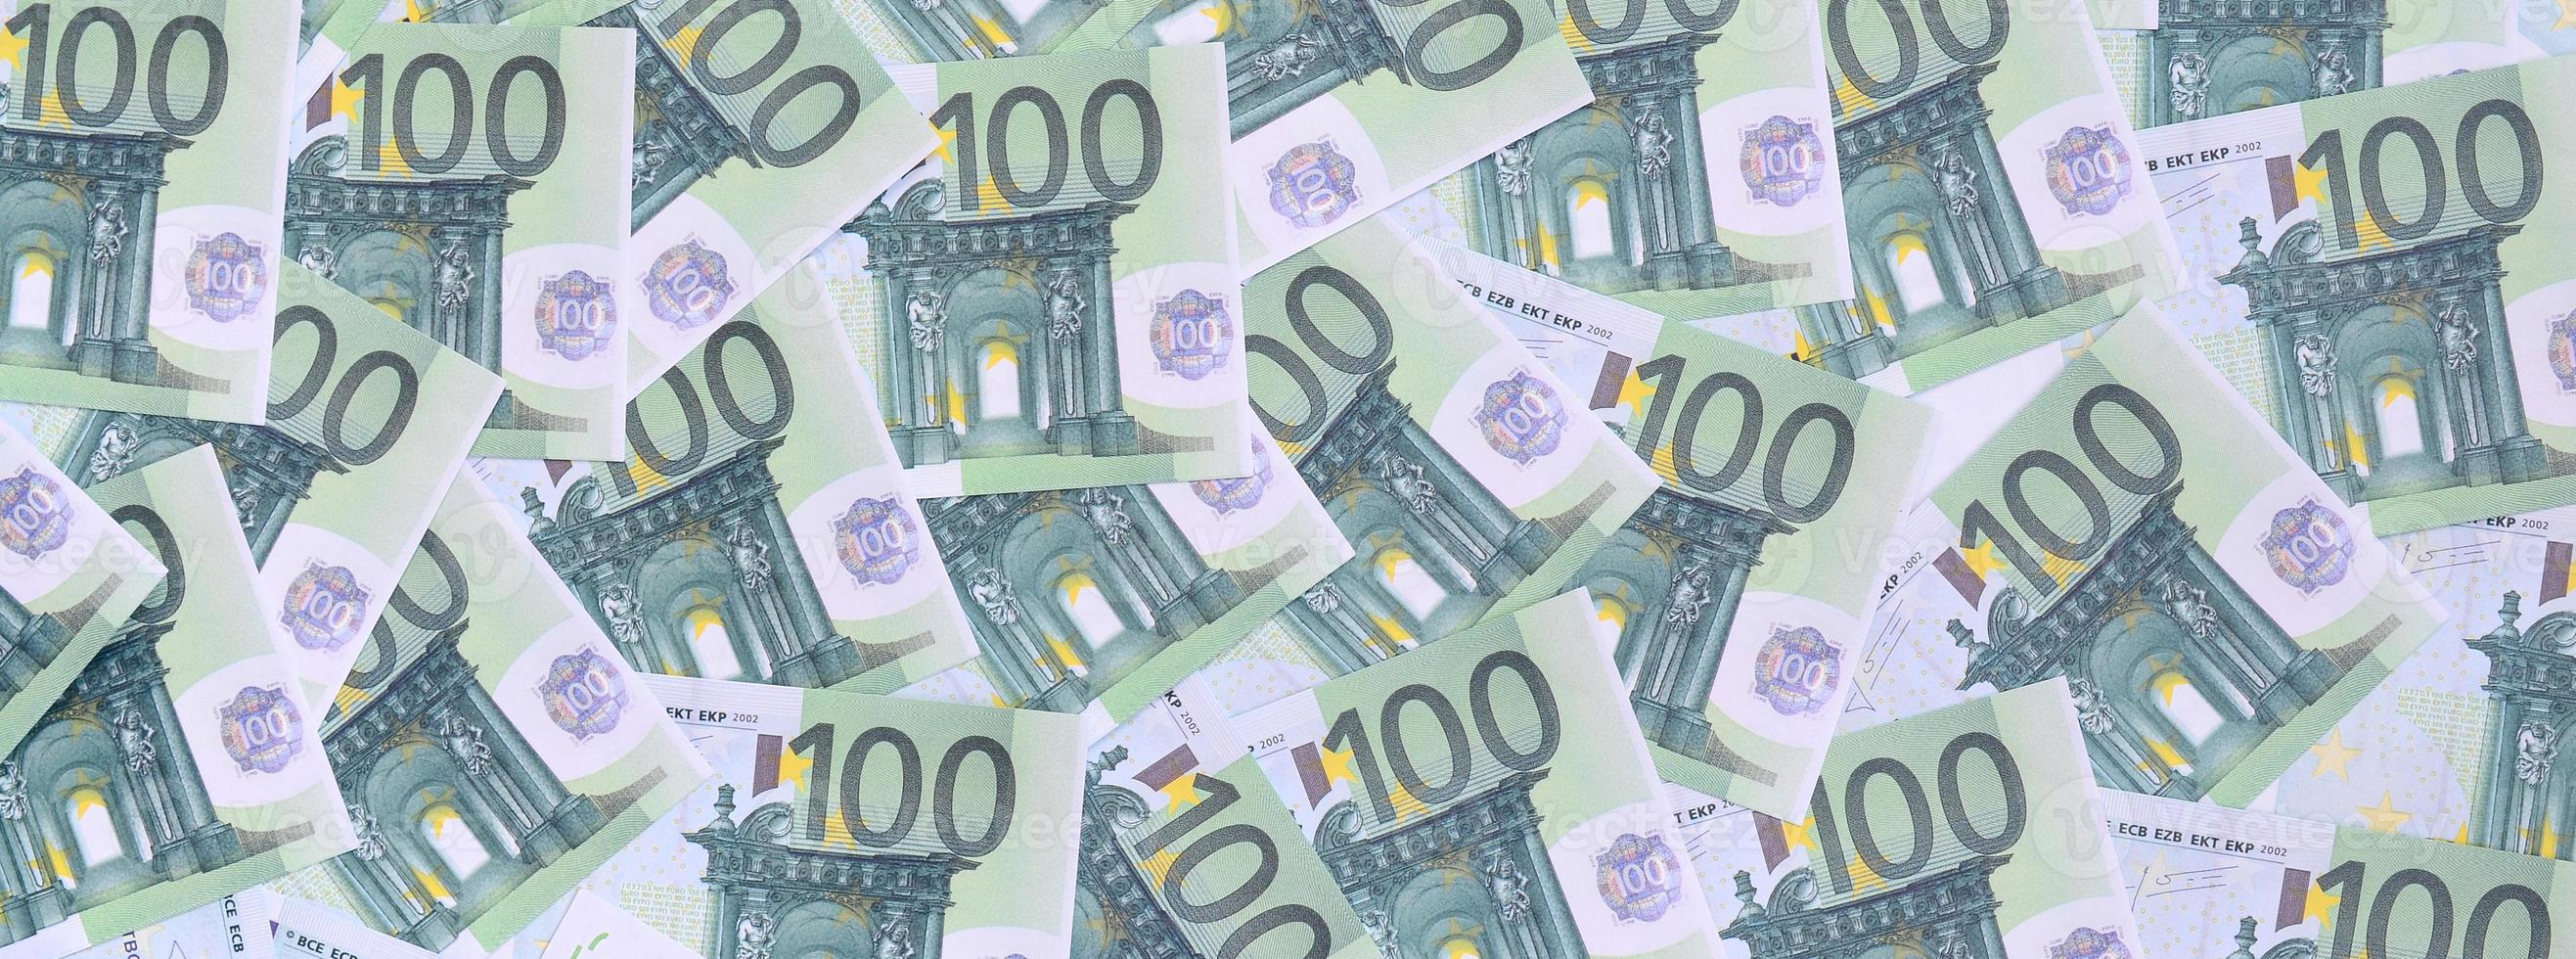 bakgrund mönster av en uppsättning av grön monetär valörer av 100 euro. en massa av pengar former ett oändlig högen foto